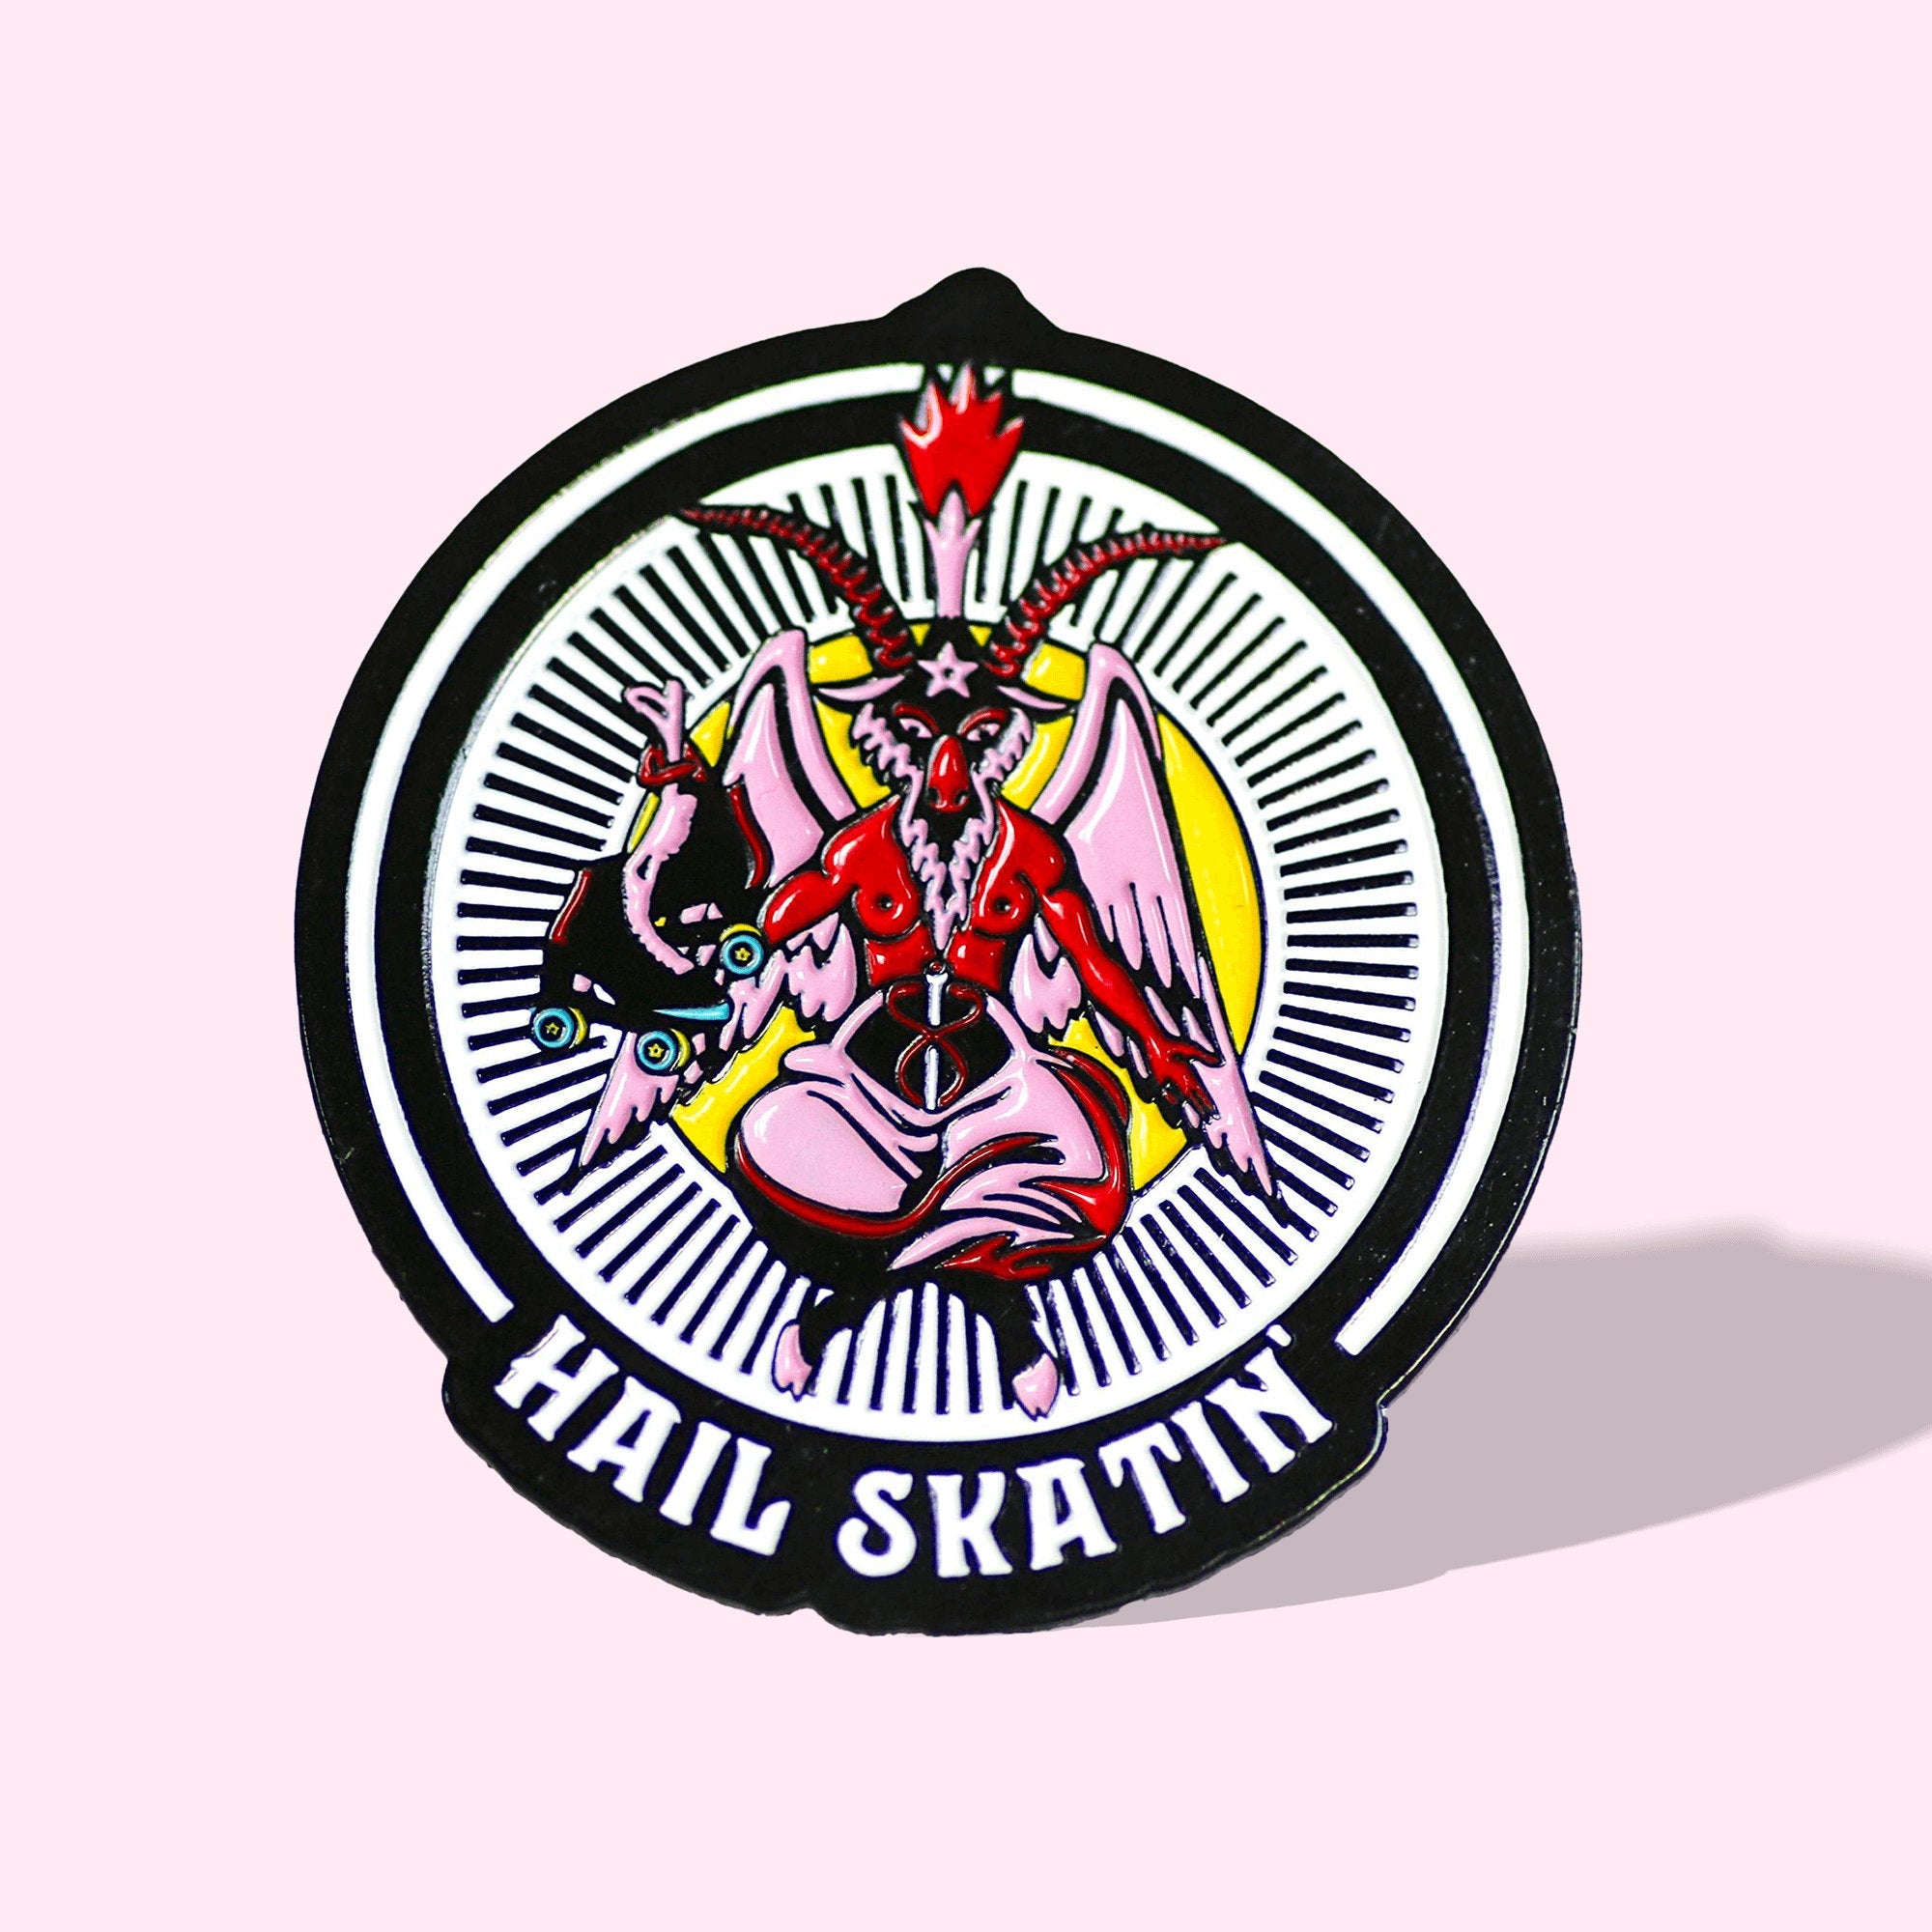 Hail Skatin Roller Skate Pin